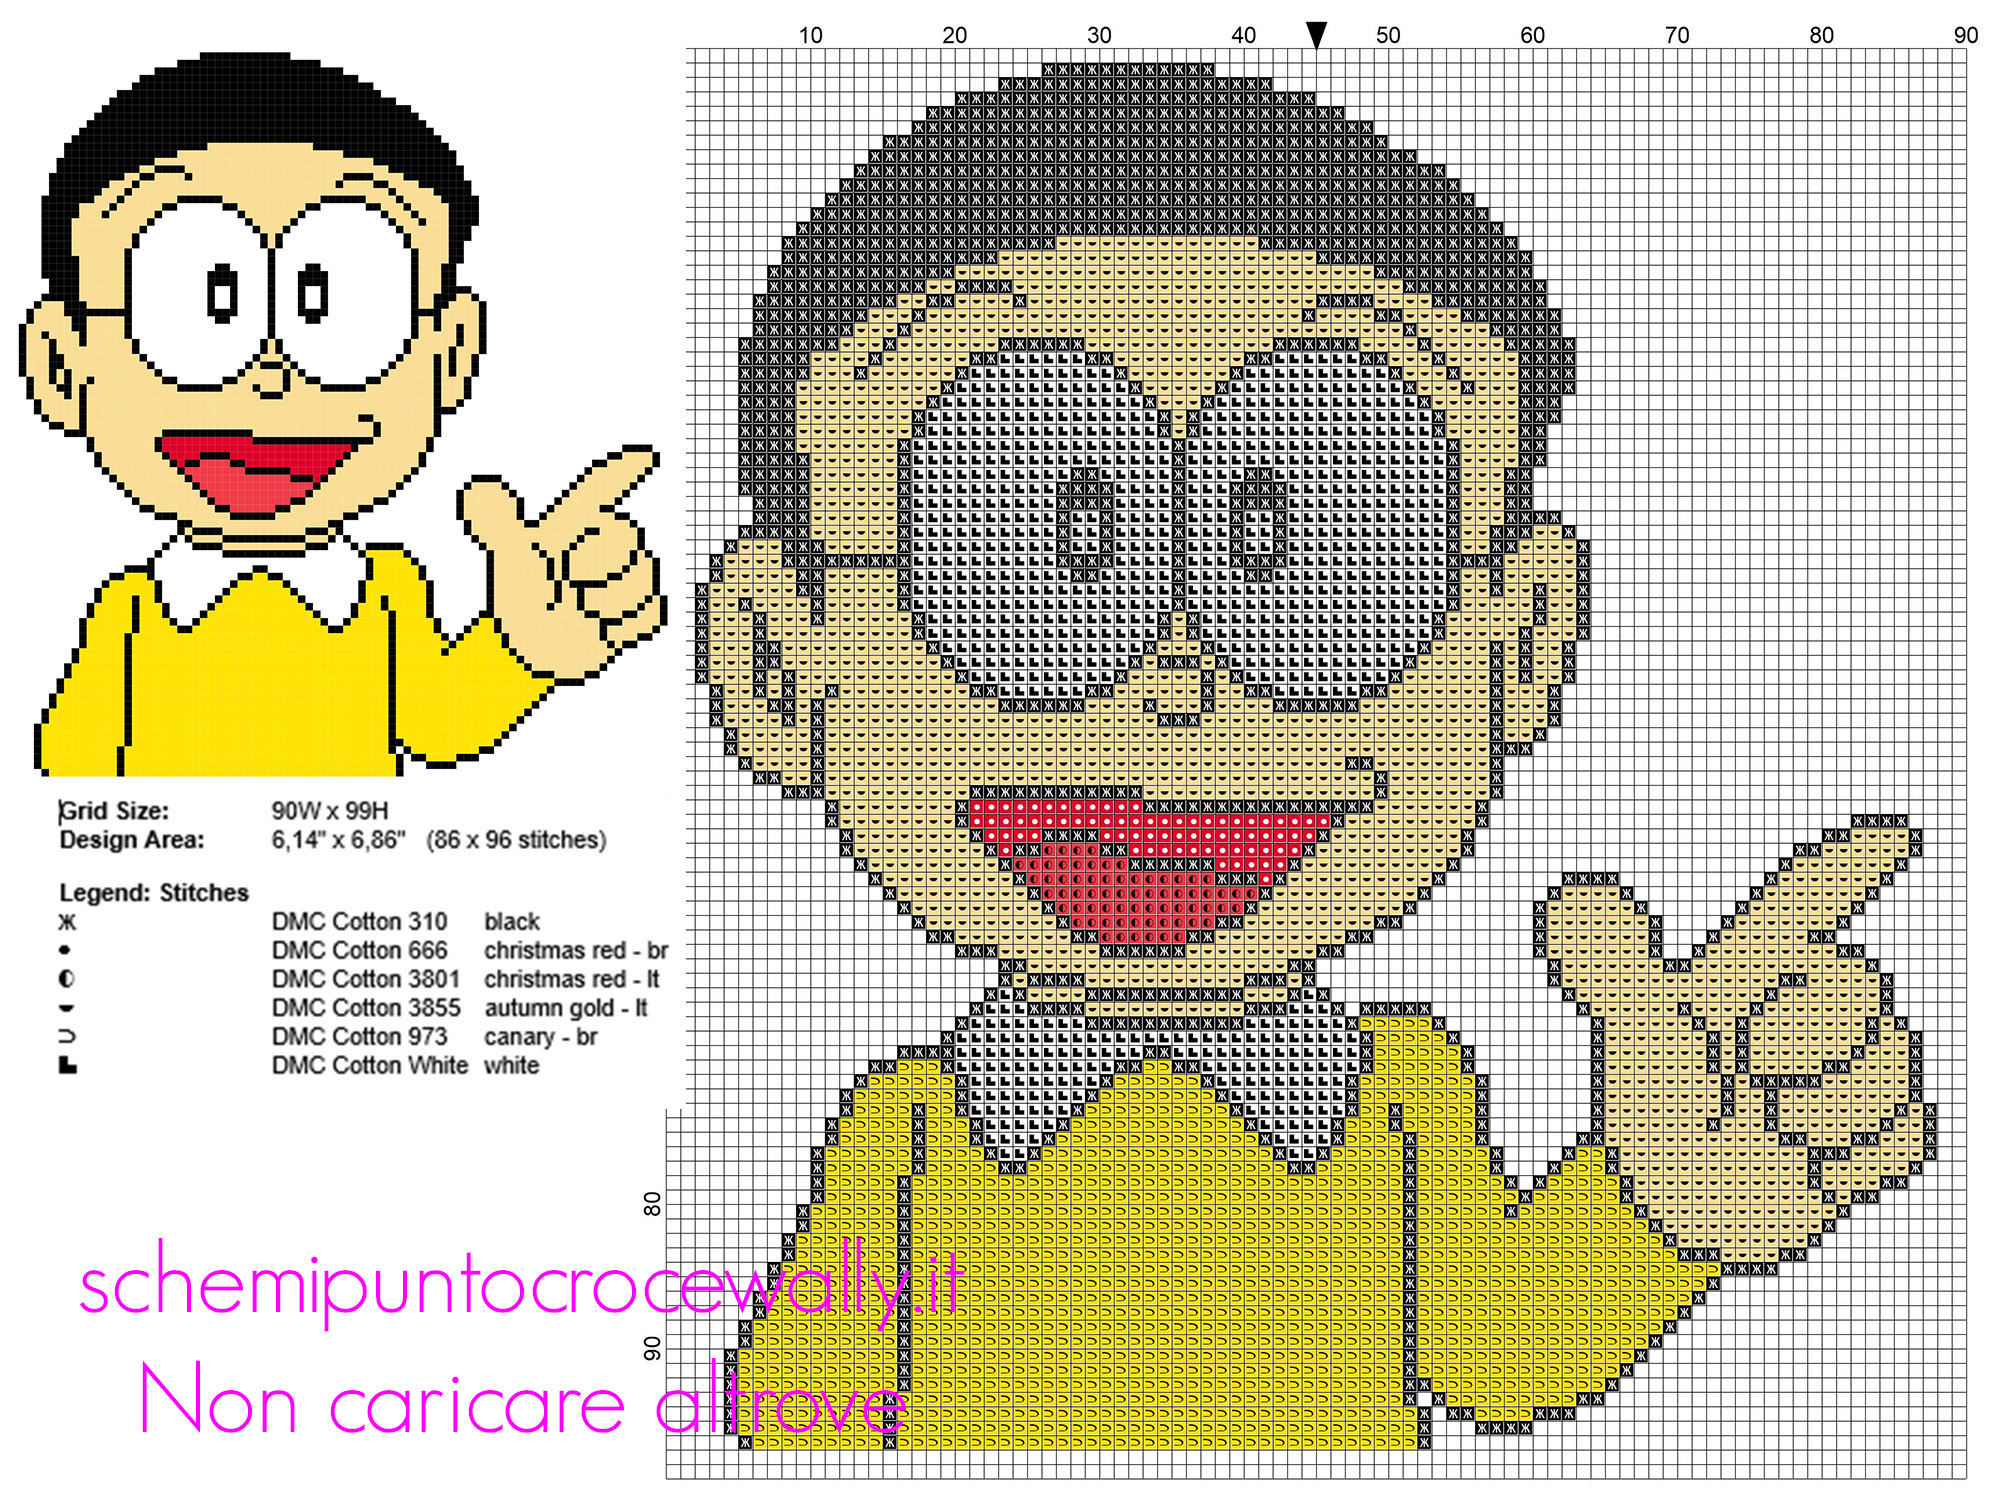 Nobita personaggio del cartone animato Doraemon schema punto croce